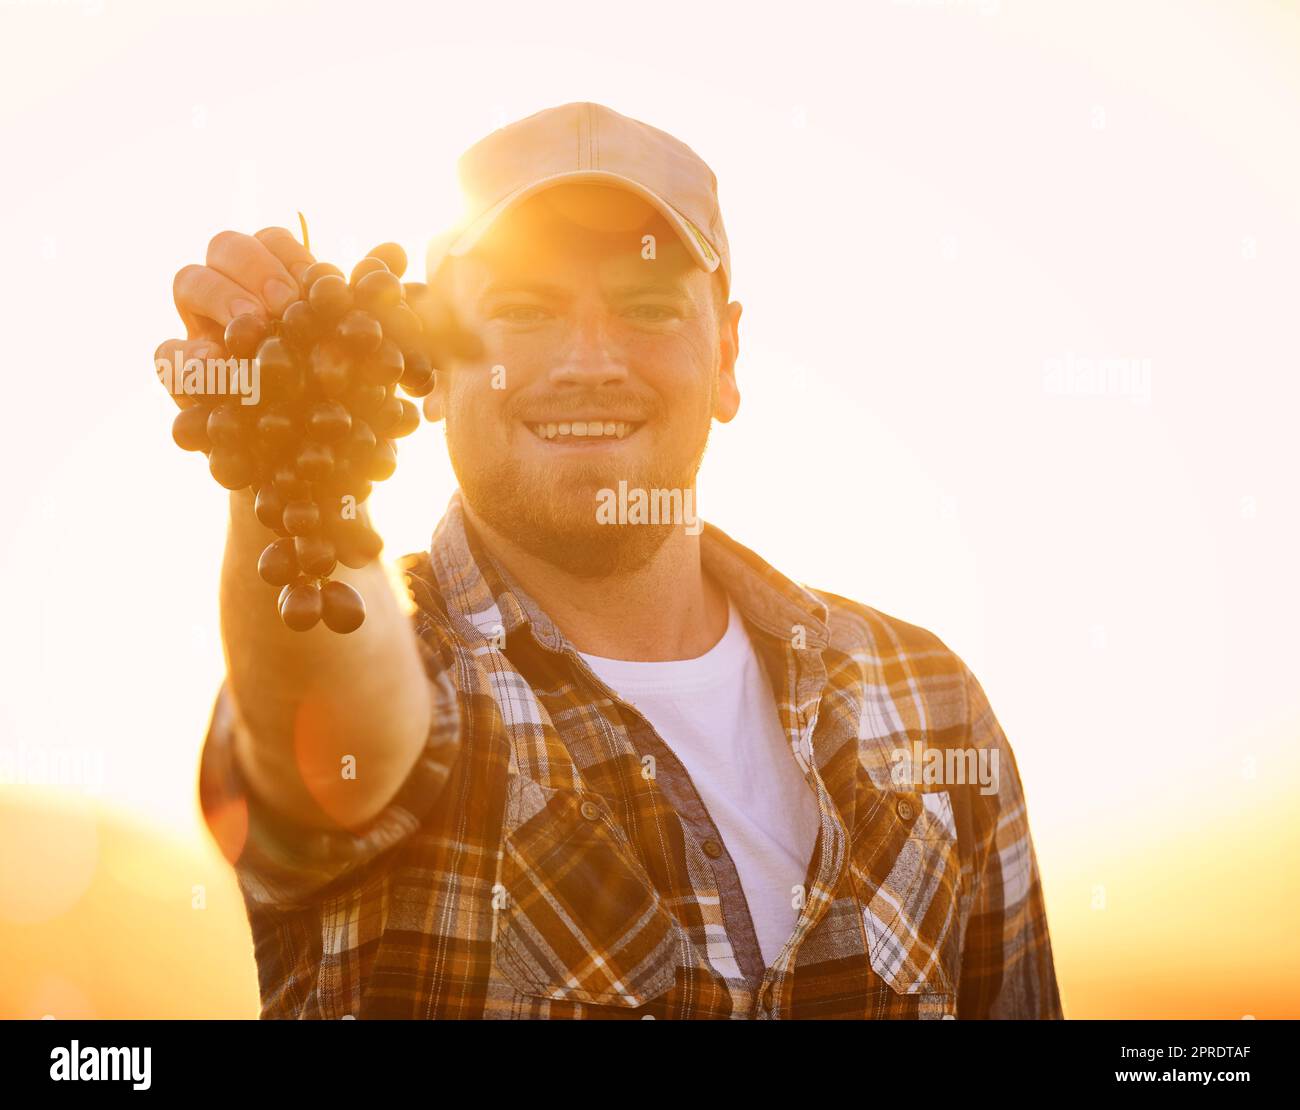 Porträt eines glücklichen Bauern, der einen Haufen Trauben hält, aufgeregt und glücklich mit Bio-Früchten. Junger Mann, stolz auf nachhaltige Landwirtschaft, fröhlich und begierig, sein Geschäft für den Verkauf von Produkten zu eröffnen Stockfoto